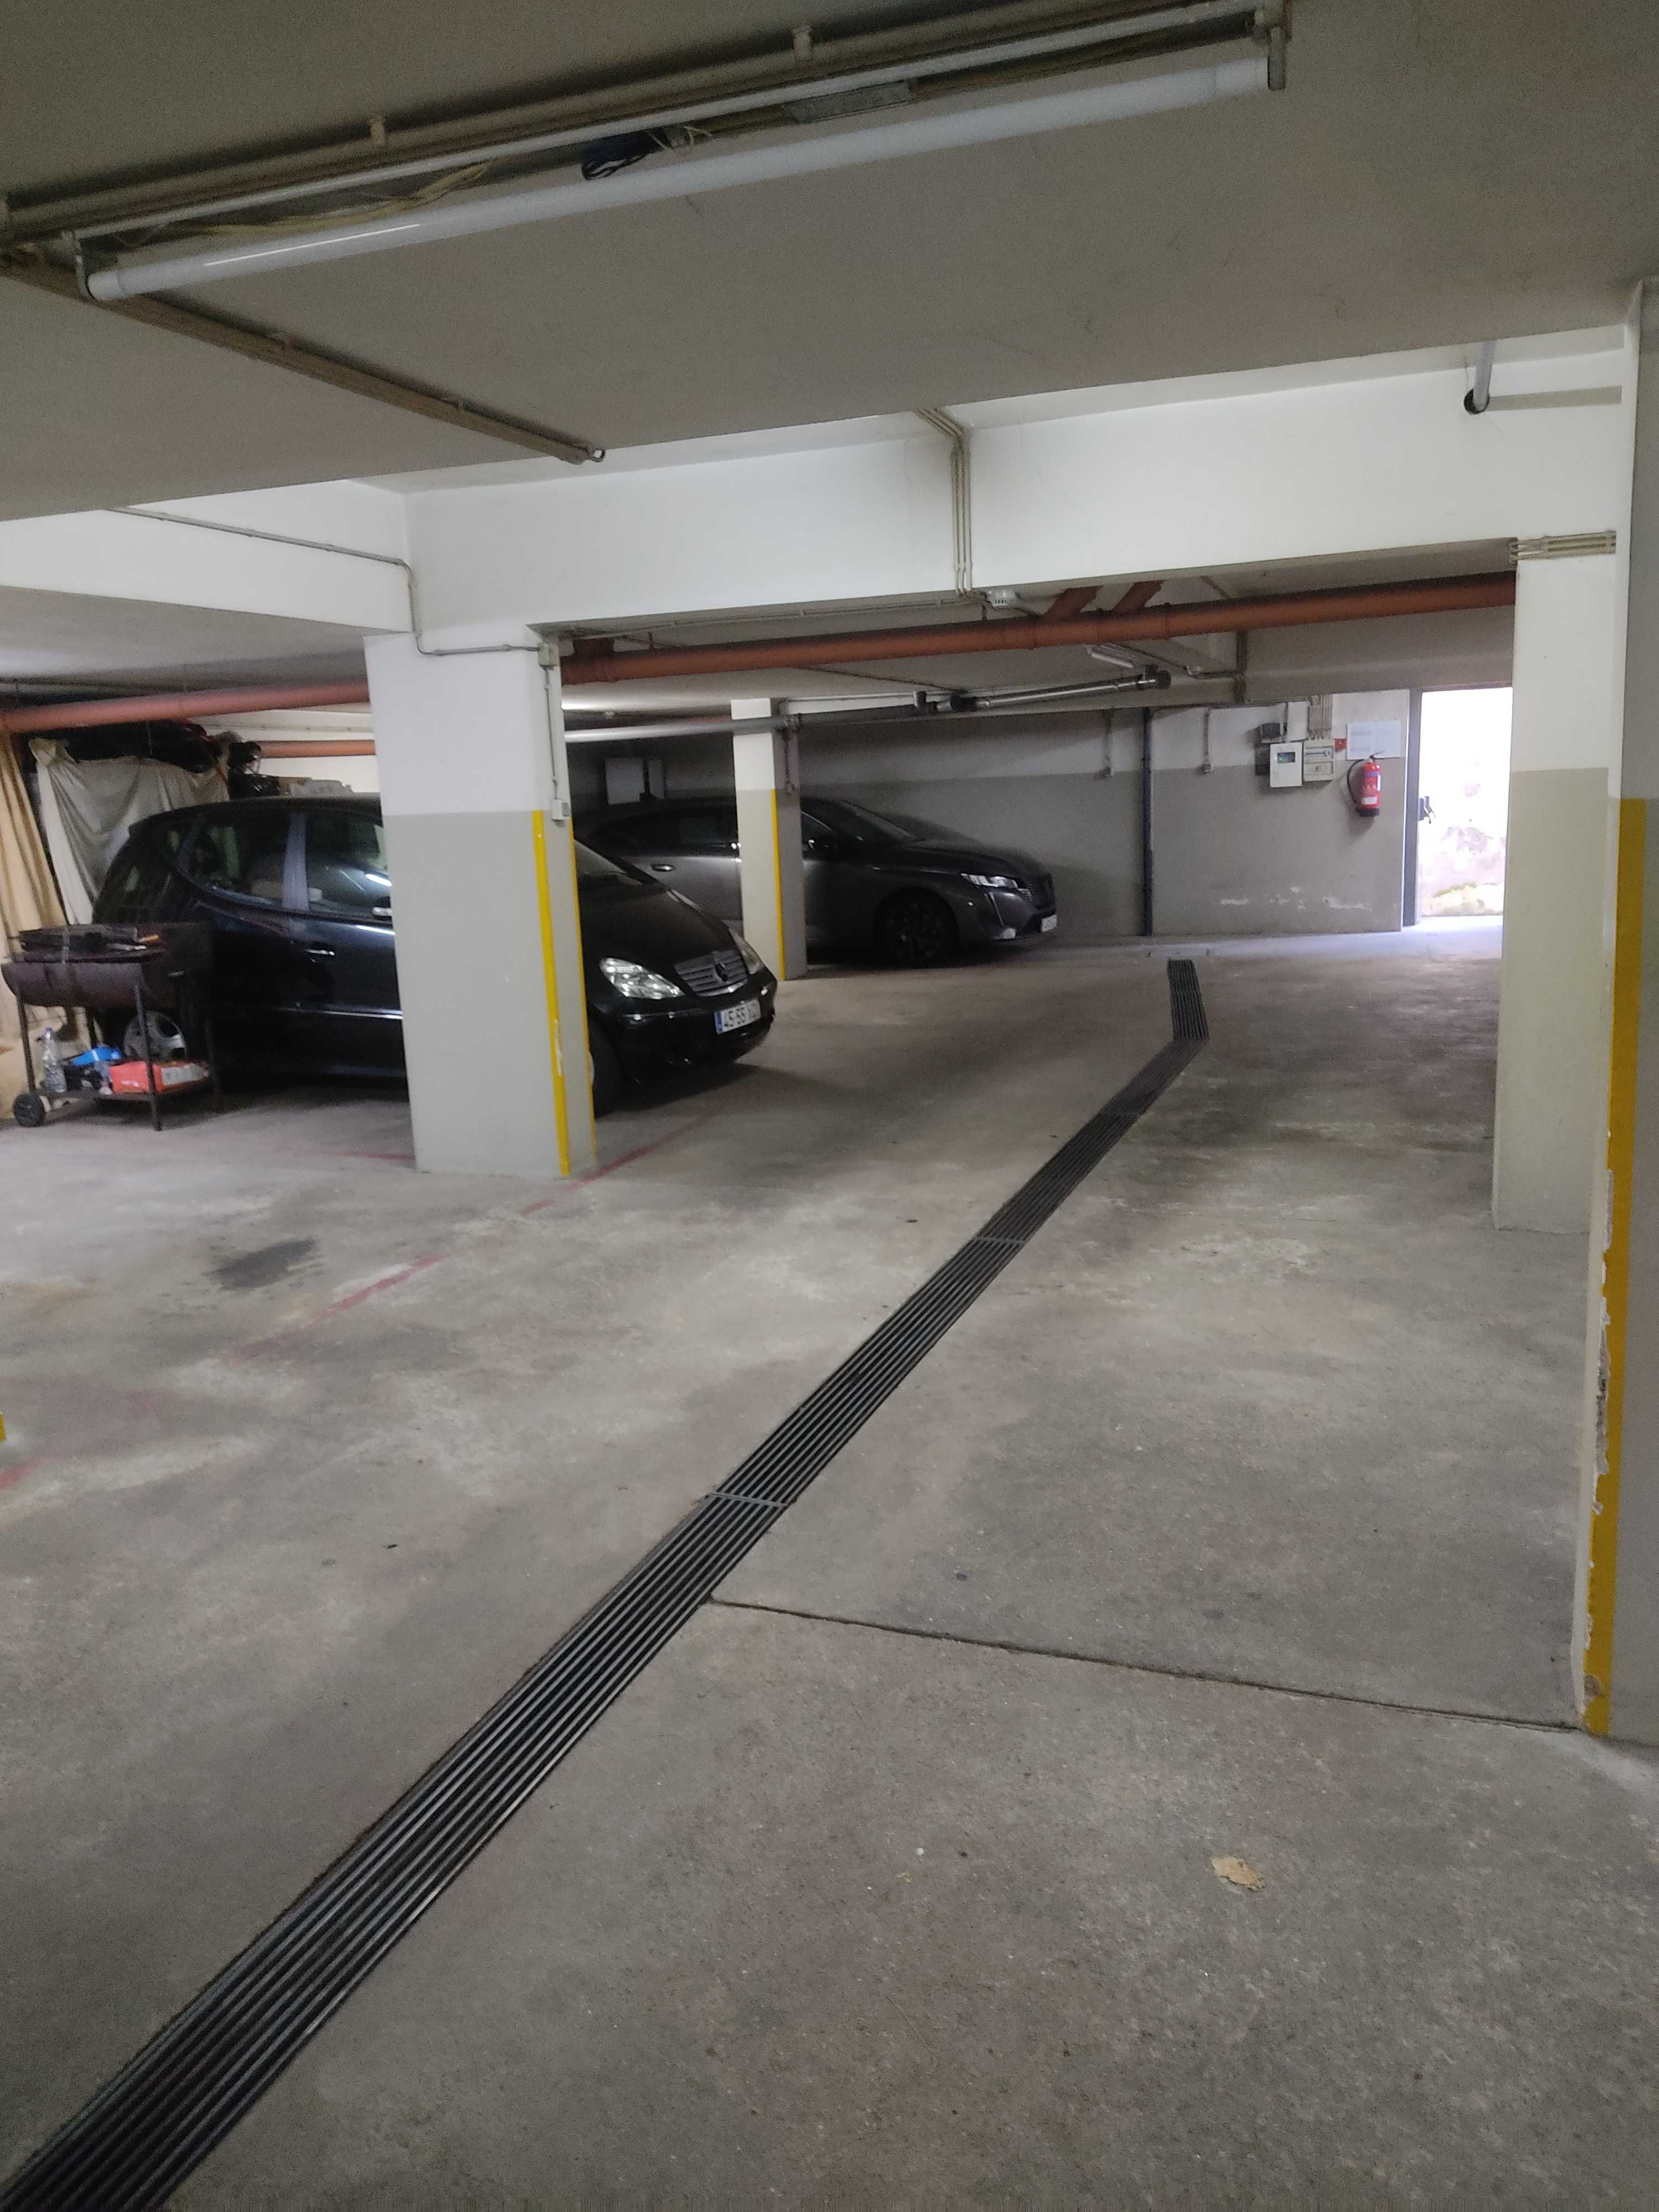 Garagem Espaçosa na Maia: Reserve já o Seu Espaço de Estacionamento!